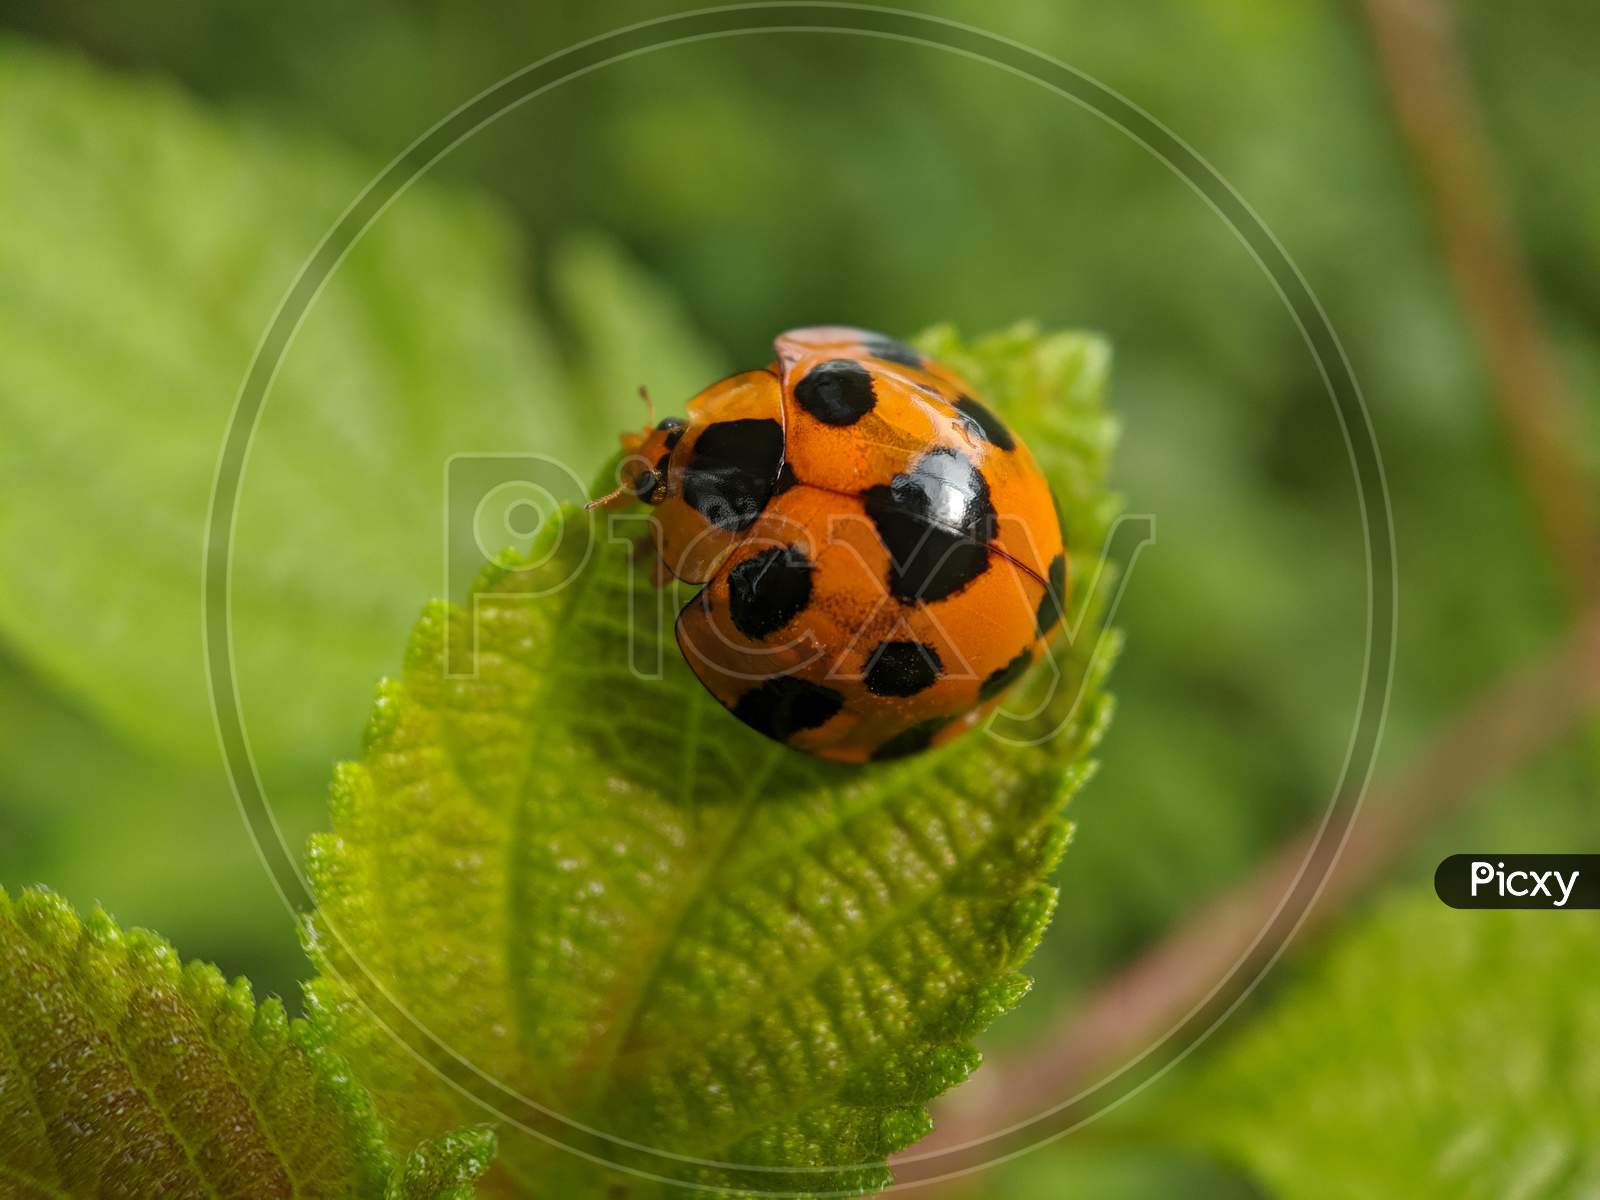 A Ladybug on the leaf